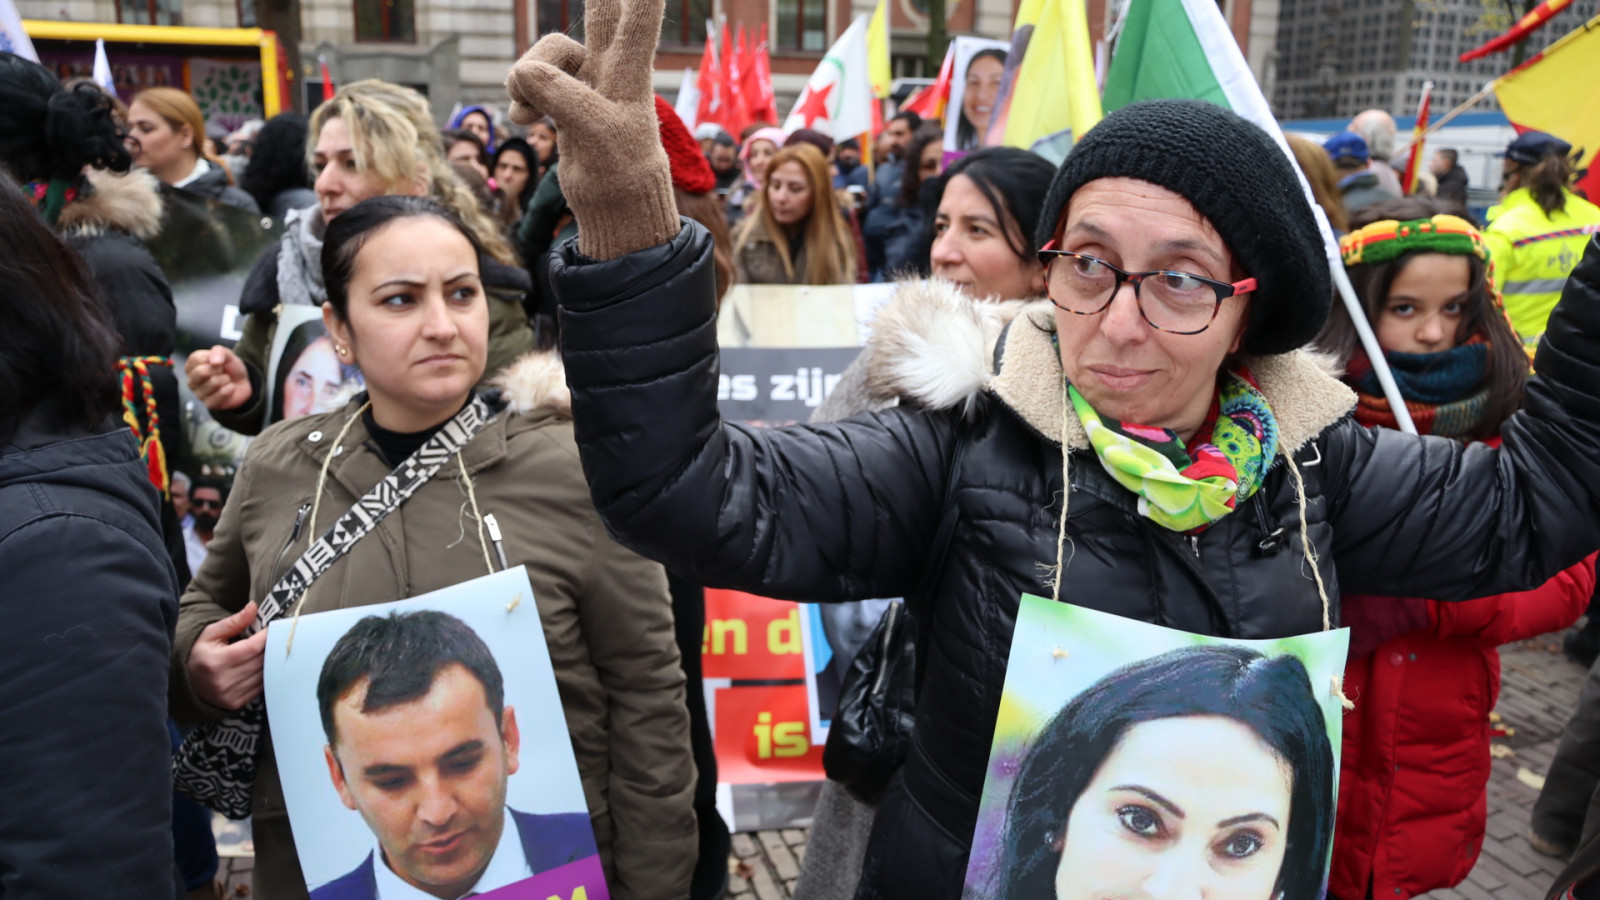 Koerden demonstreren tegen beleid Erdogan